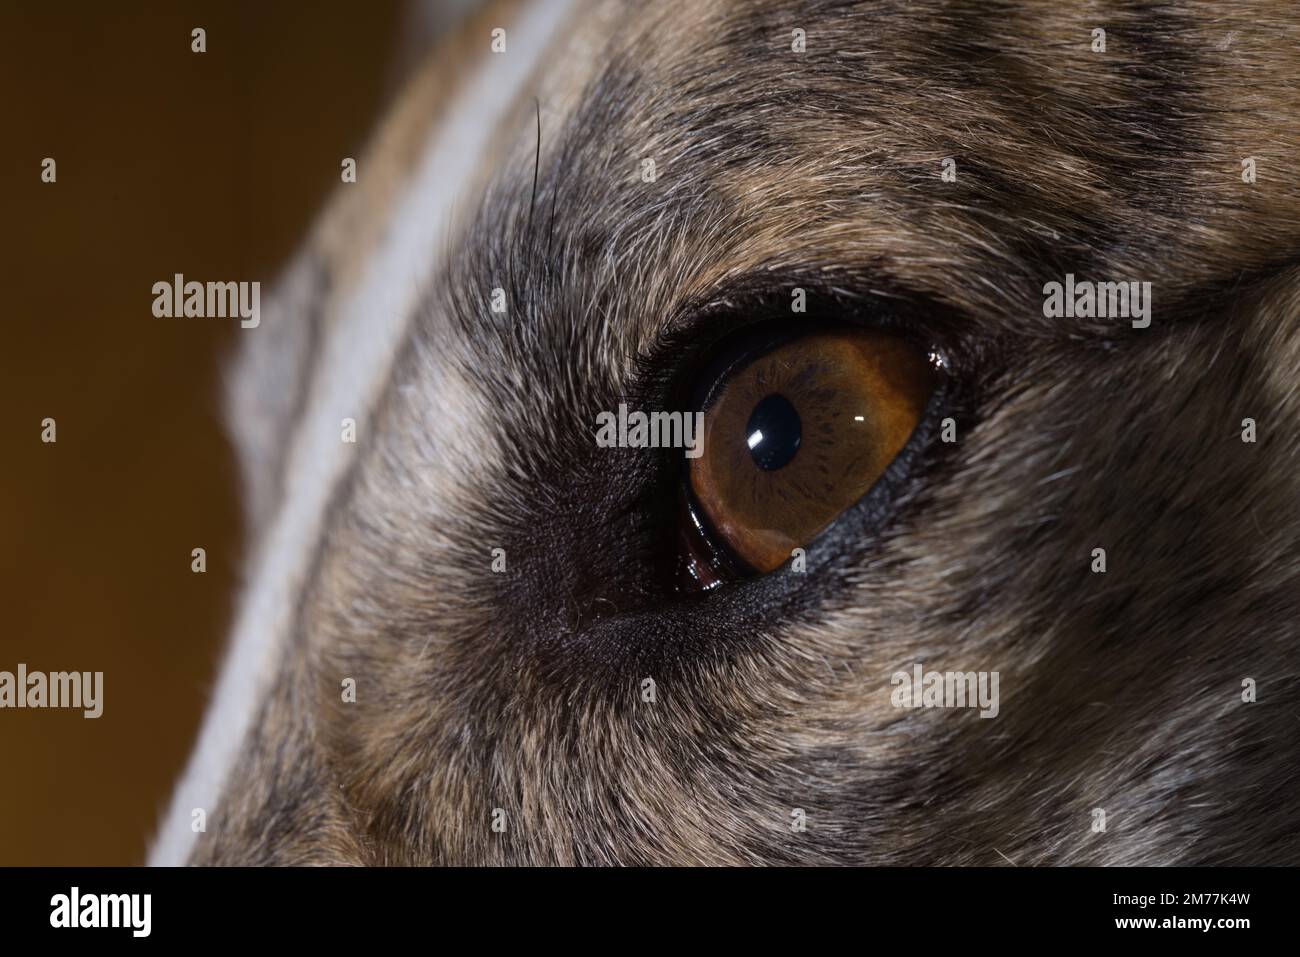 Les cryptes et autres détails de ce chien iris sont mis en évidence par flash. Perspective macro d'un animal adopté gronde visage, montrant le gros plan de l'oeil gauche Banque D'Images